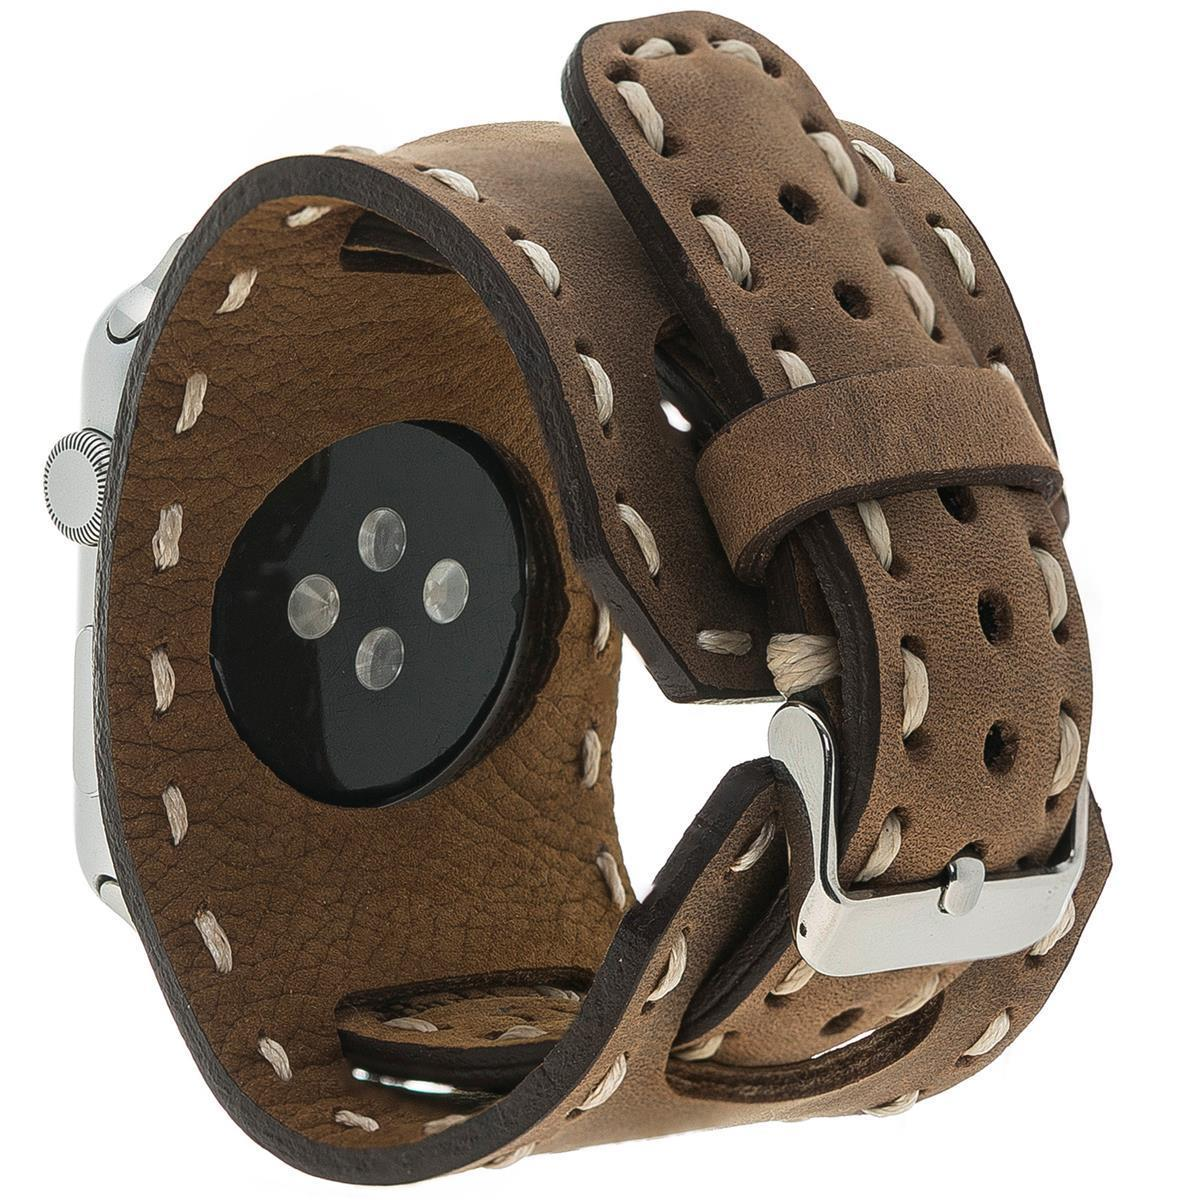 BURKLEY Vintage Cuff der Ersatzband, 8 Leder Braun Watch, Wechsel-Armband, Vorgängerversionen Apple Apple, alle Antik Series und